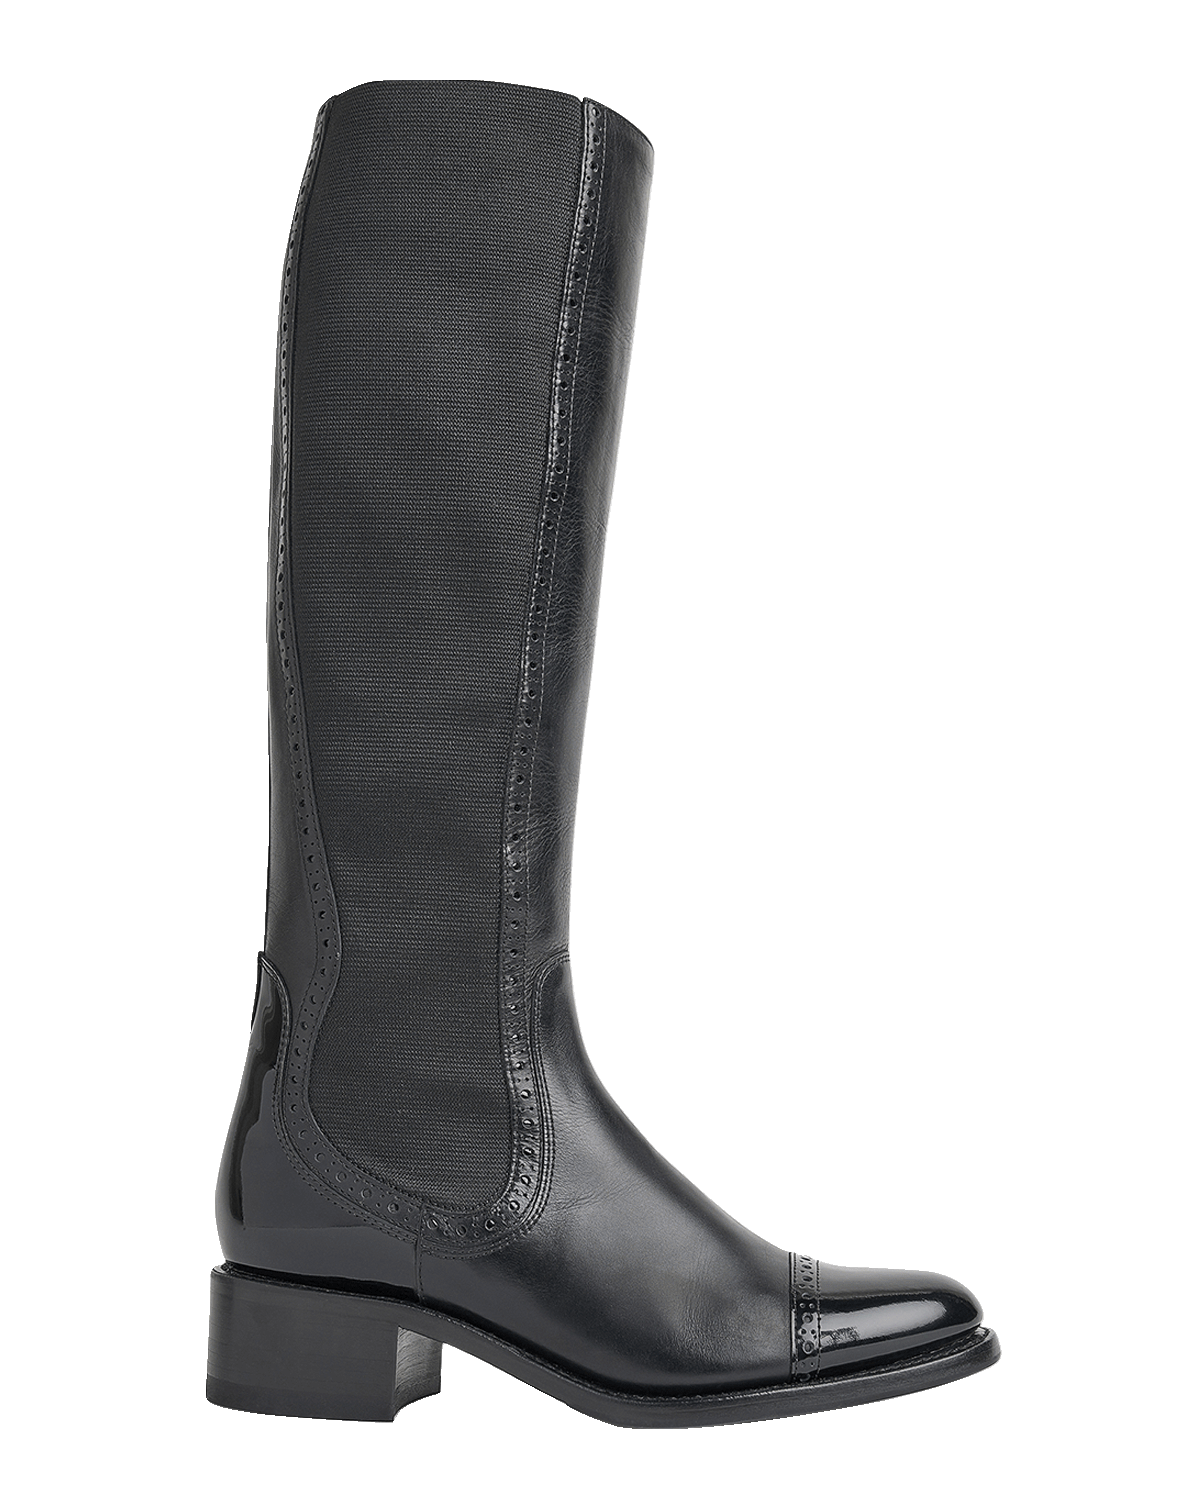 Stuart Weitzman 5050 Suede Over-The-Knee Boots | Neiman Marcus